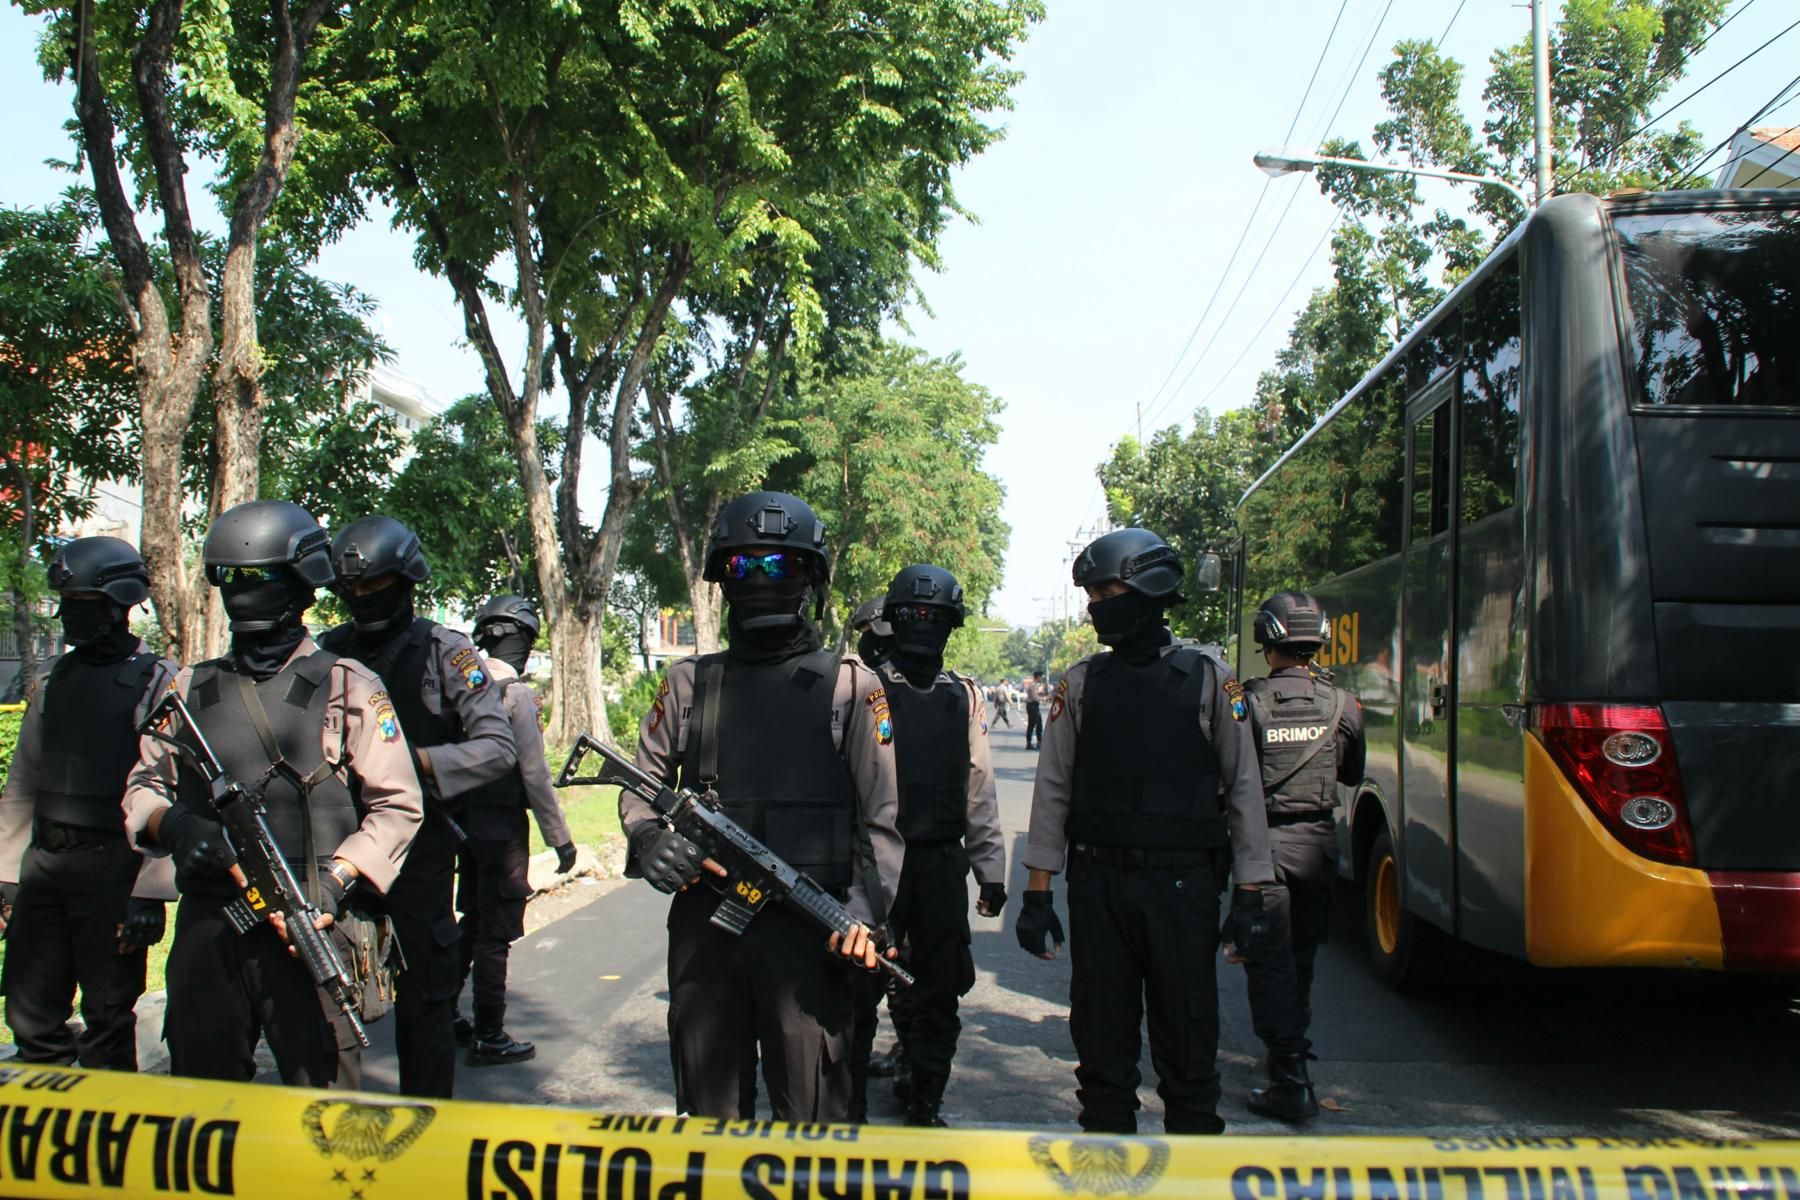 Атеттати с бомби срещу църкви разтърсиха Индонезия